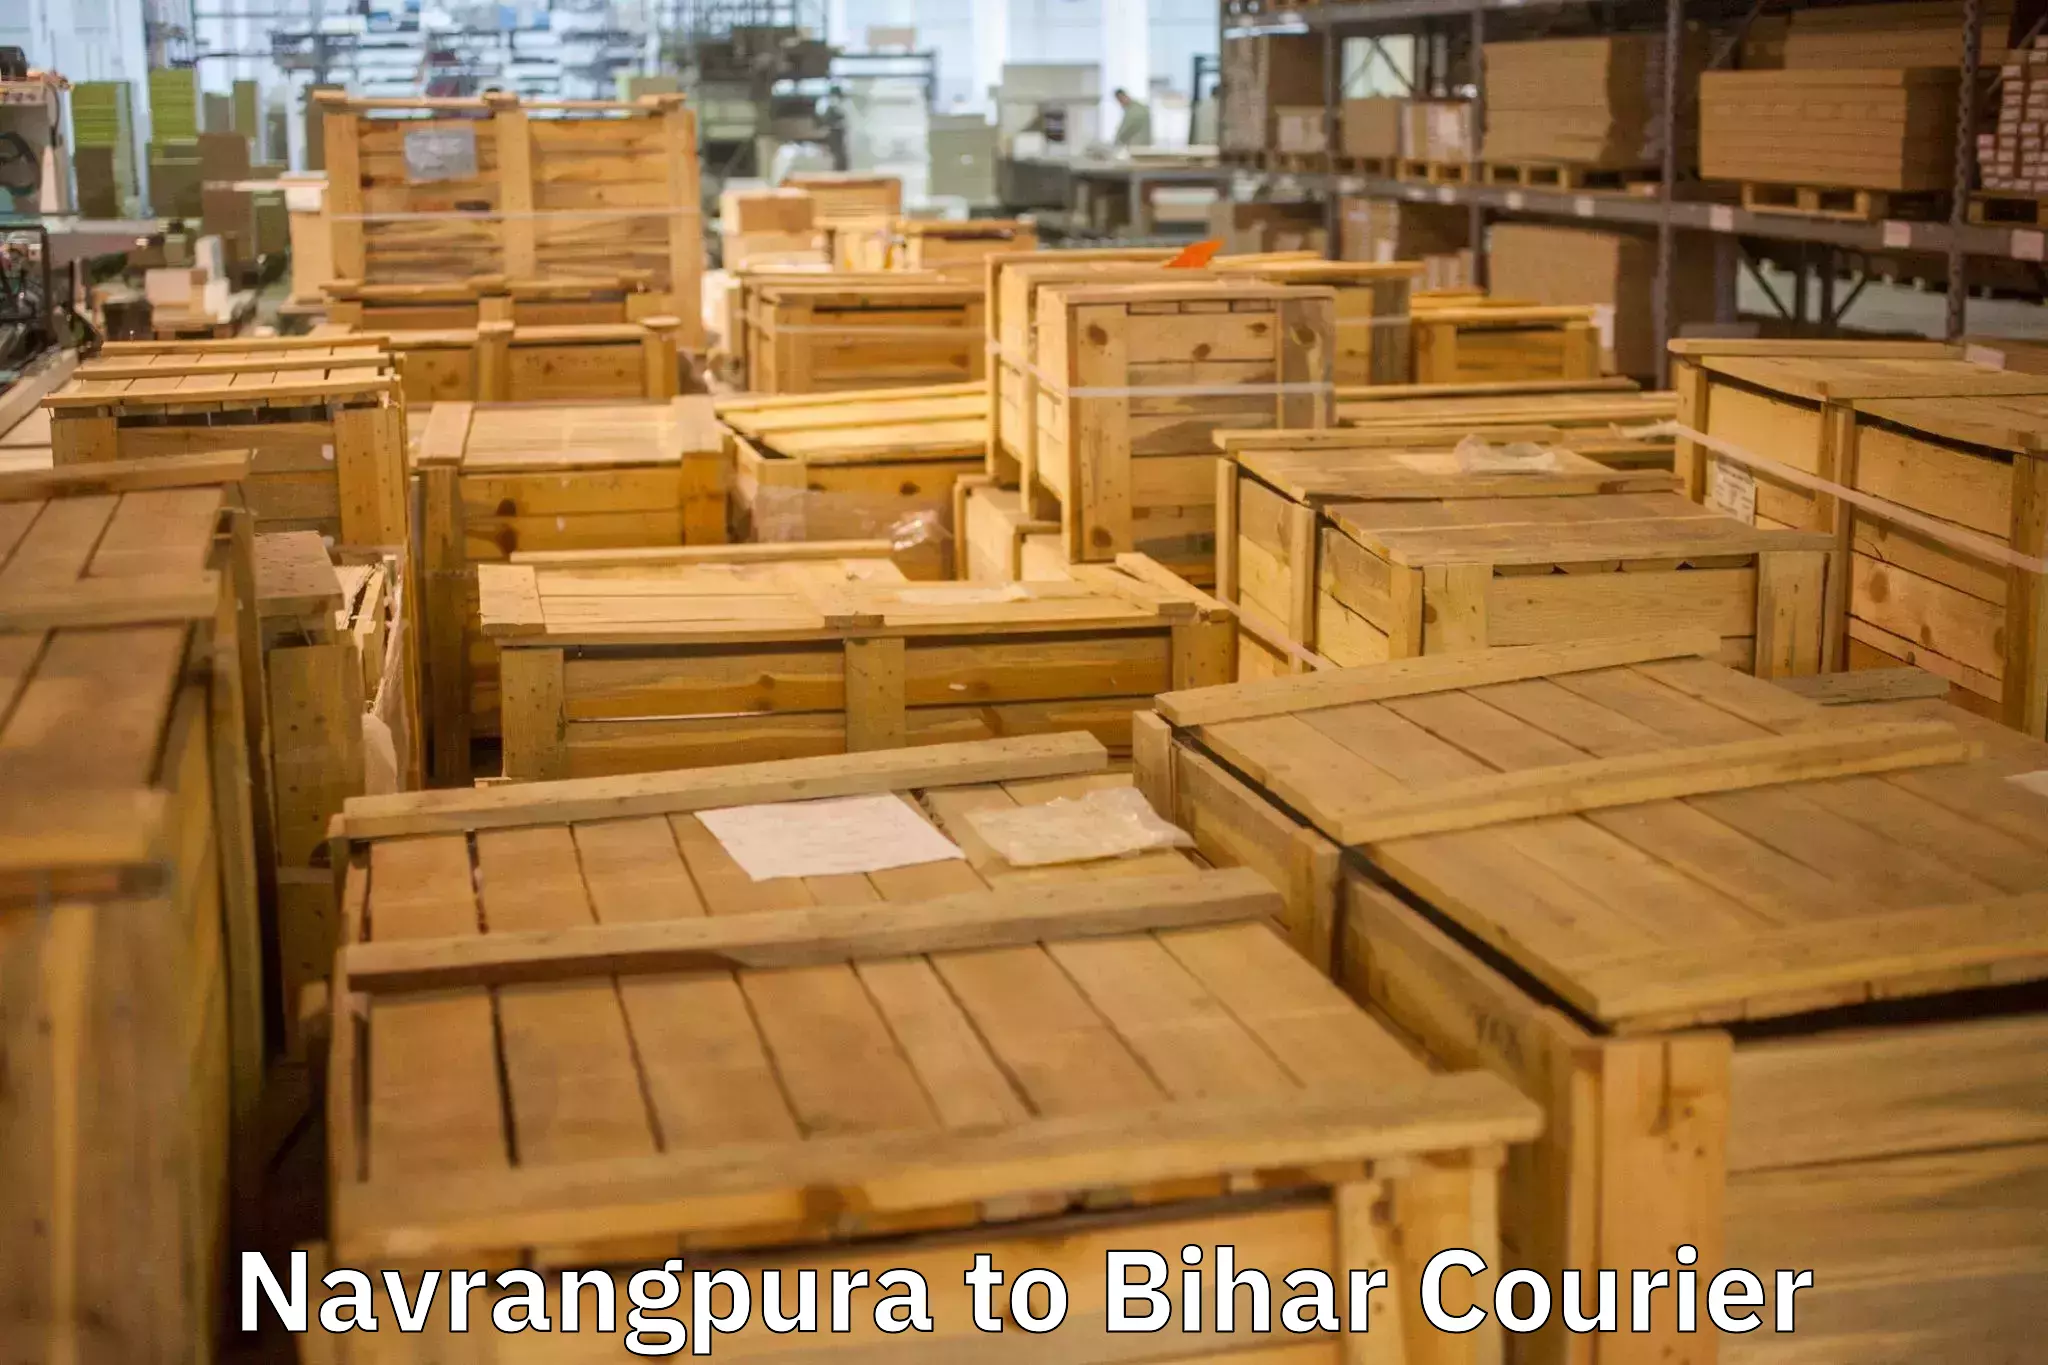 Efficient moving company Navrangpura to Bhabua